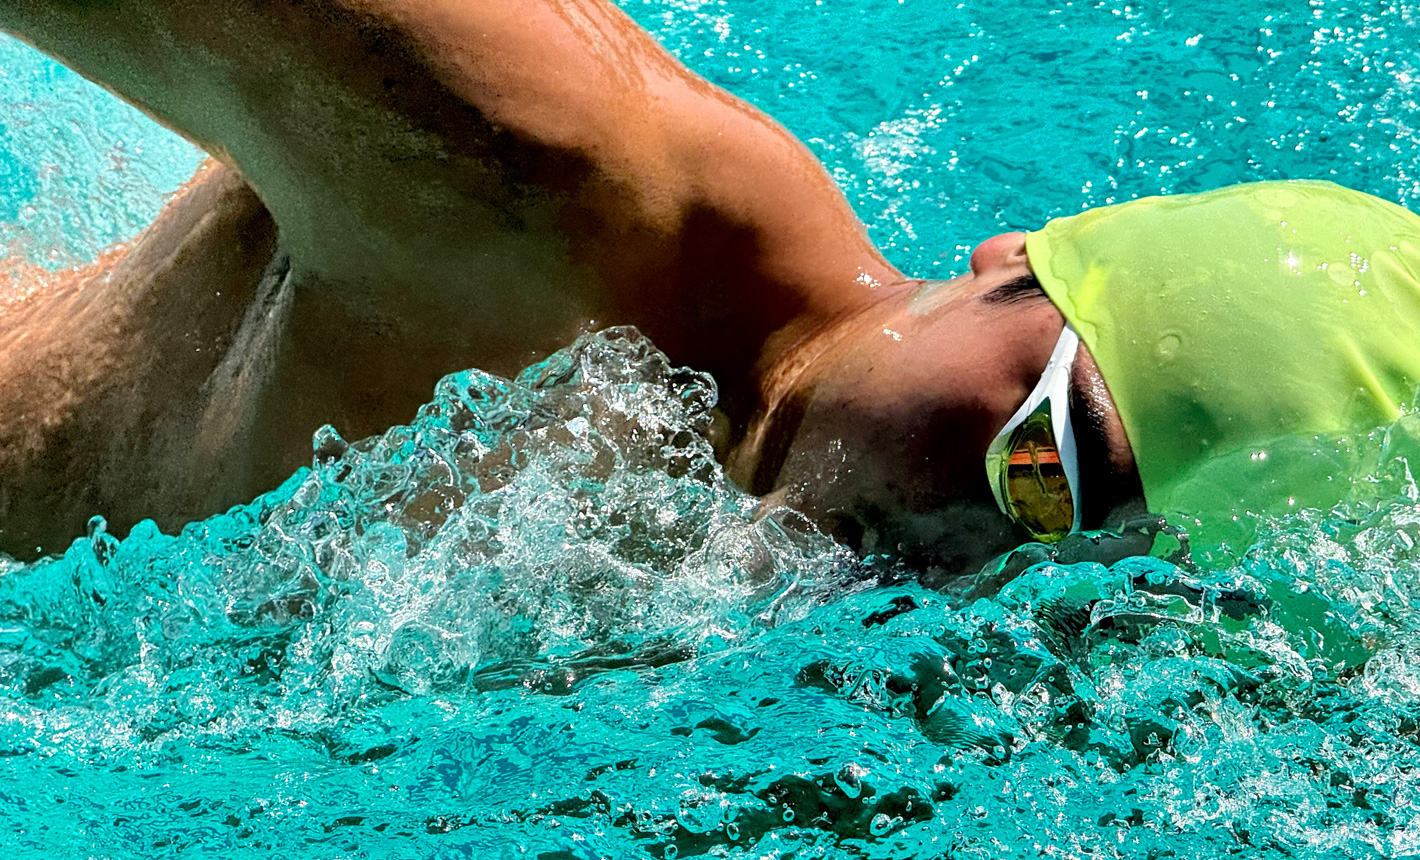 水しぶきをあげながらプールで泳ぐ人をズームで撮影した非常に精細な写真